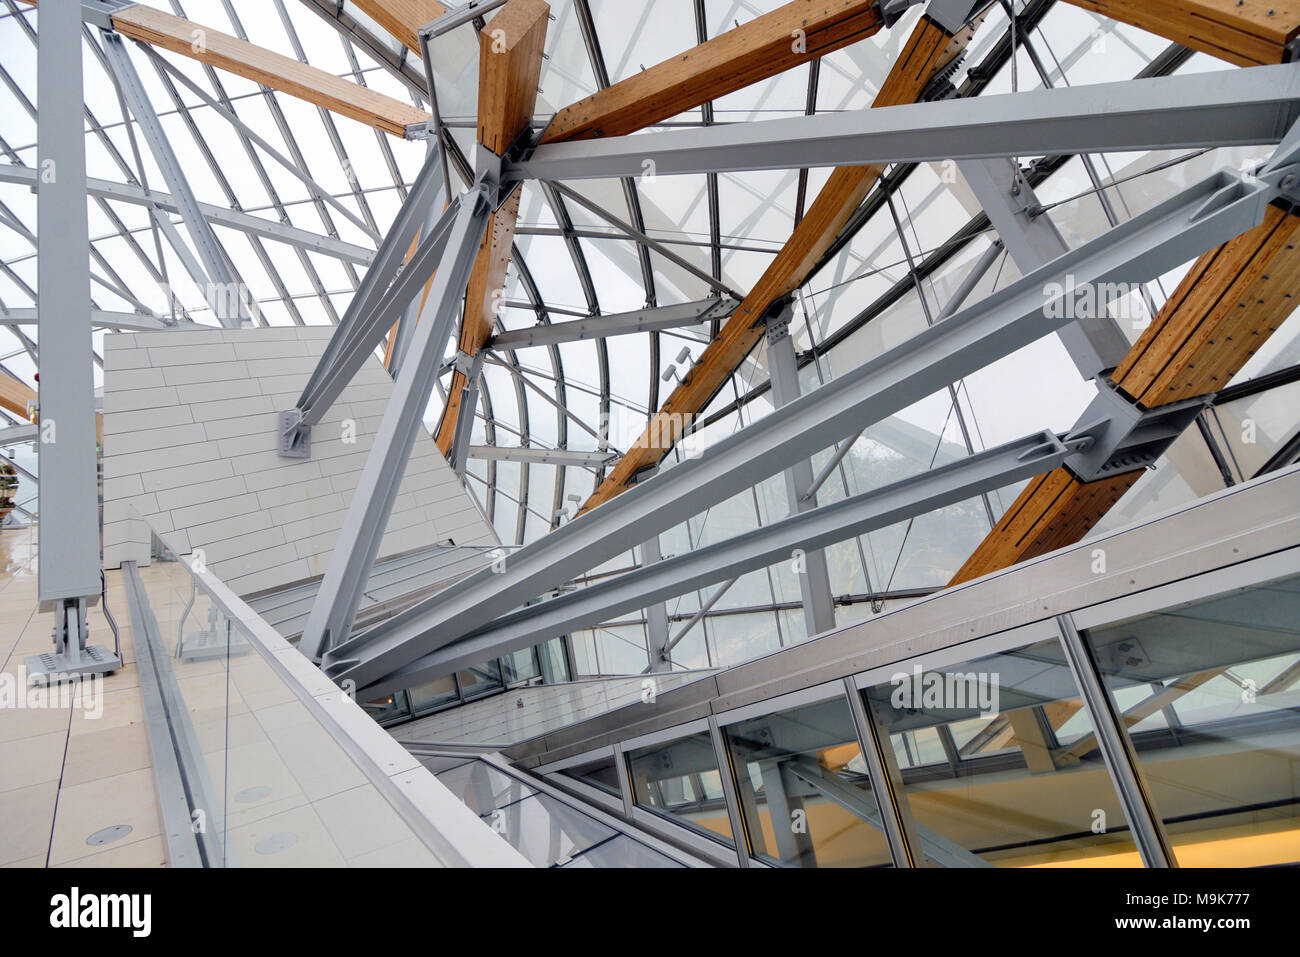 Toit en verre et structure du toit de la fondation Louis Vuitton Art Museum & Cultural Center (2006-14) conçu par Frank Gehry, Paris, France Banque D'Images